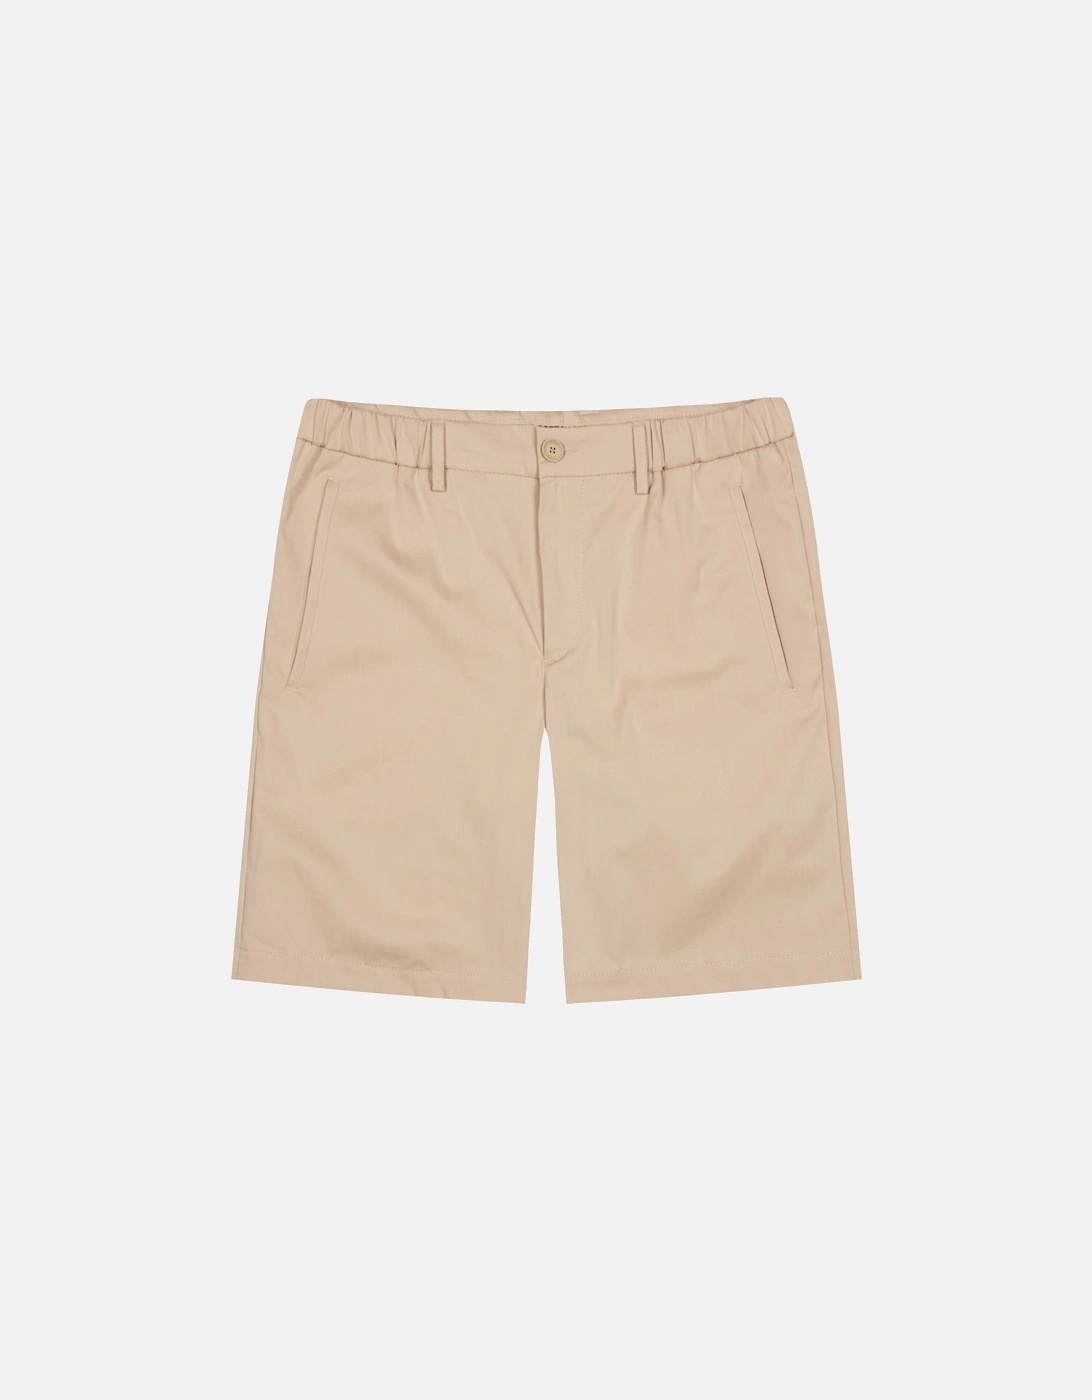 Men's Liem 2 Shorts - Medium Beige - Cream/Beige